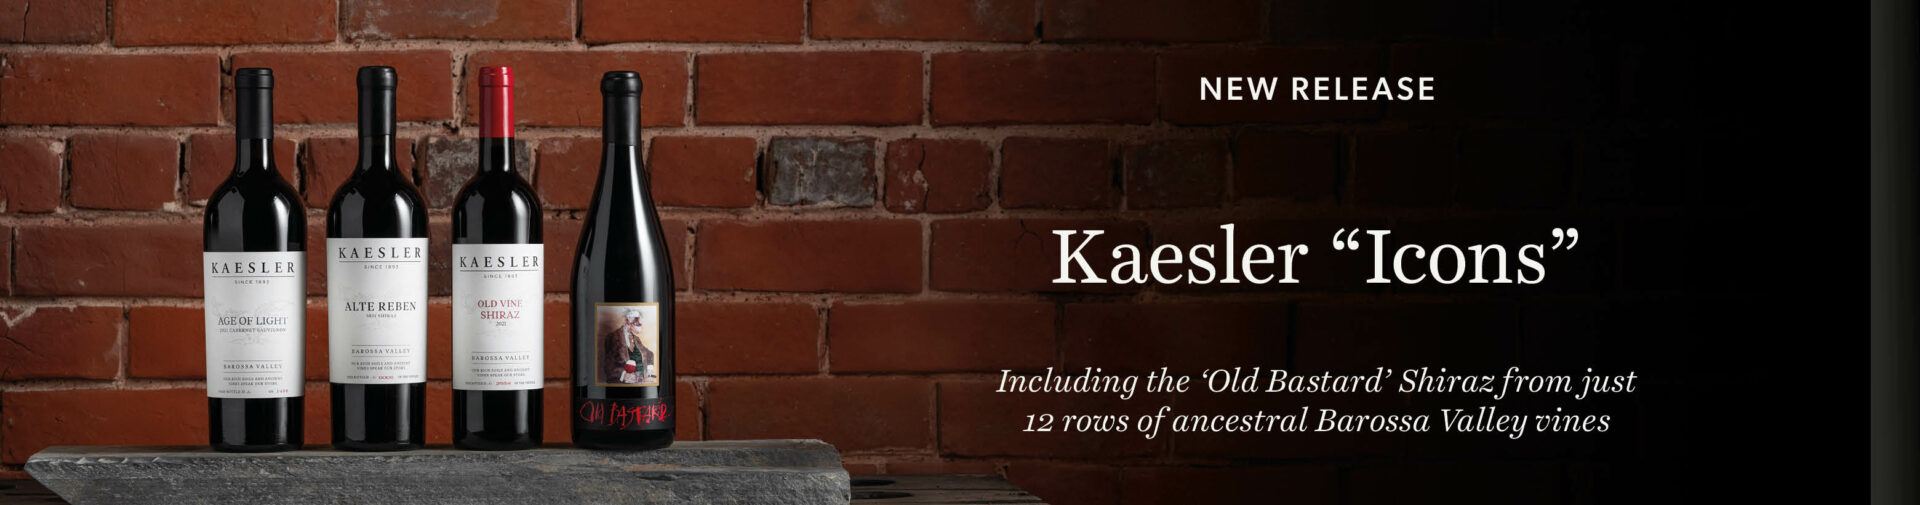 Kaesler releases 